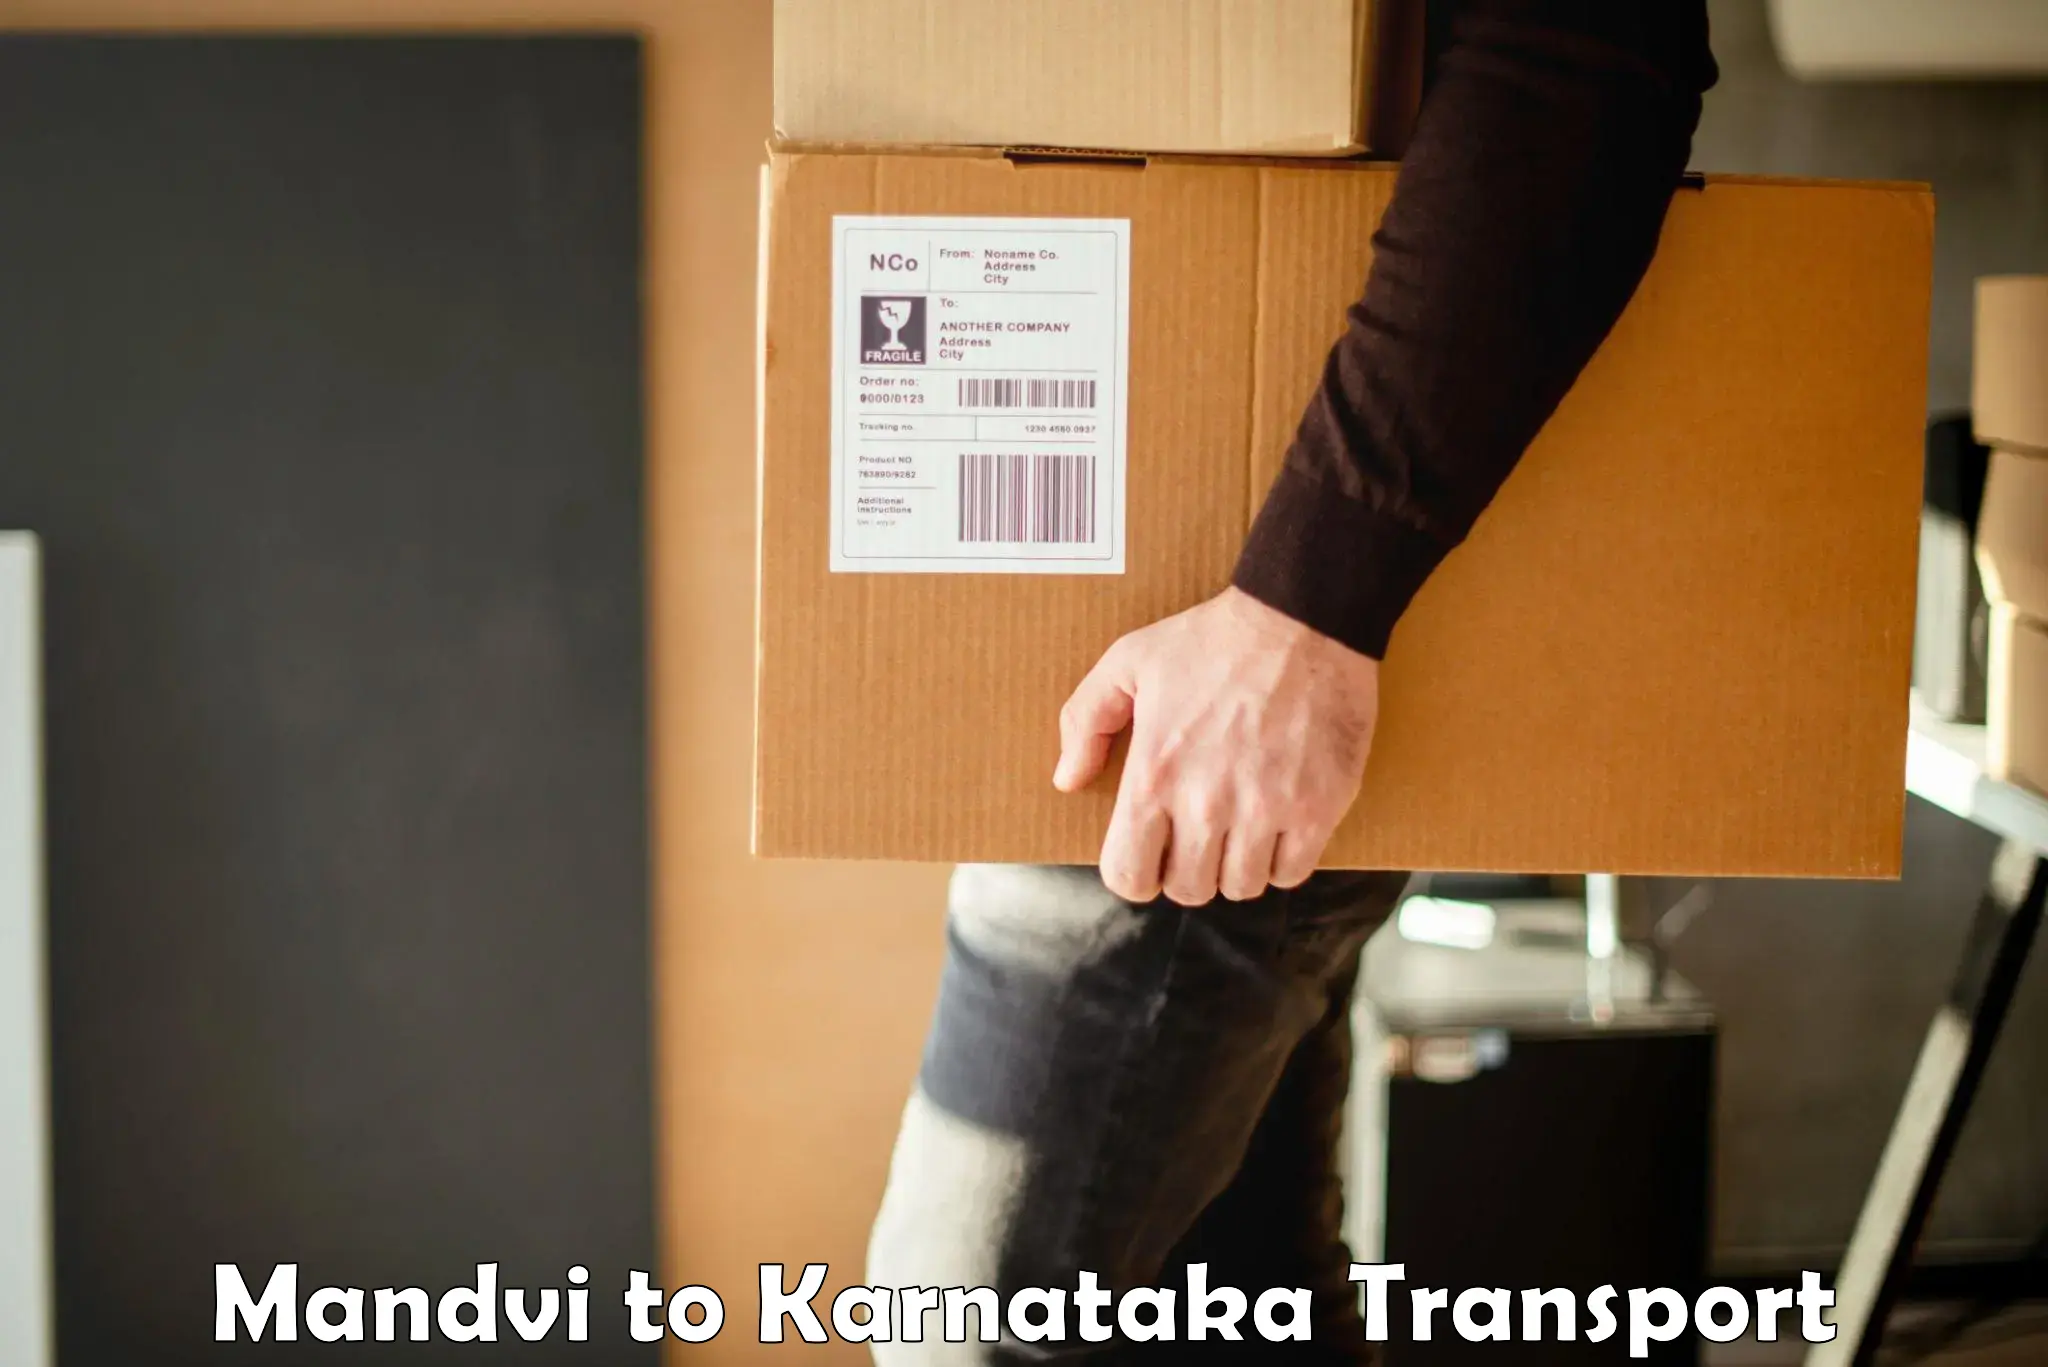 Pick up transport service Mandvi to Basavakalyan